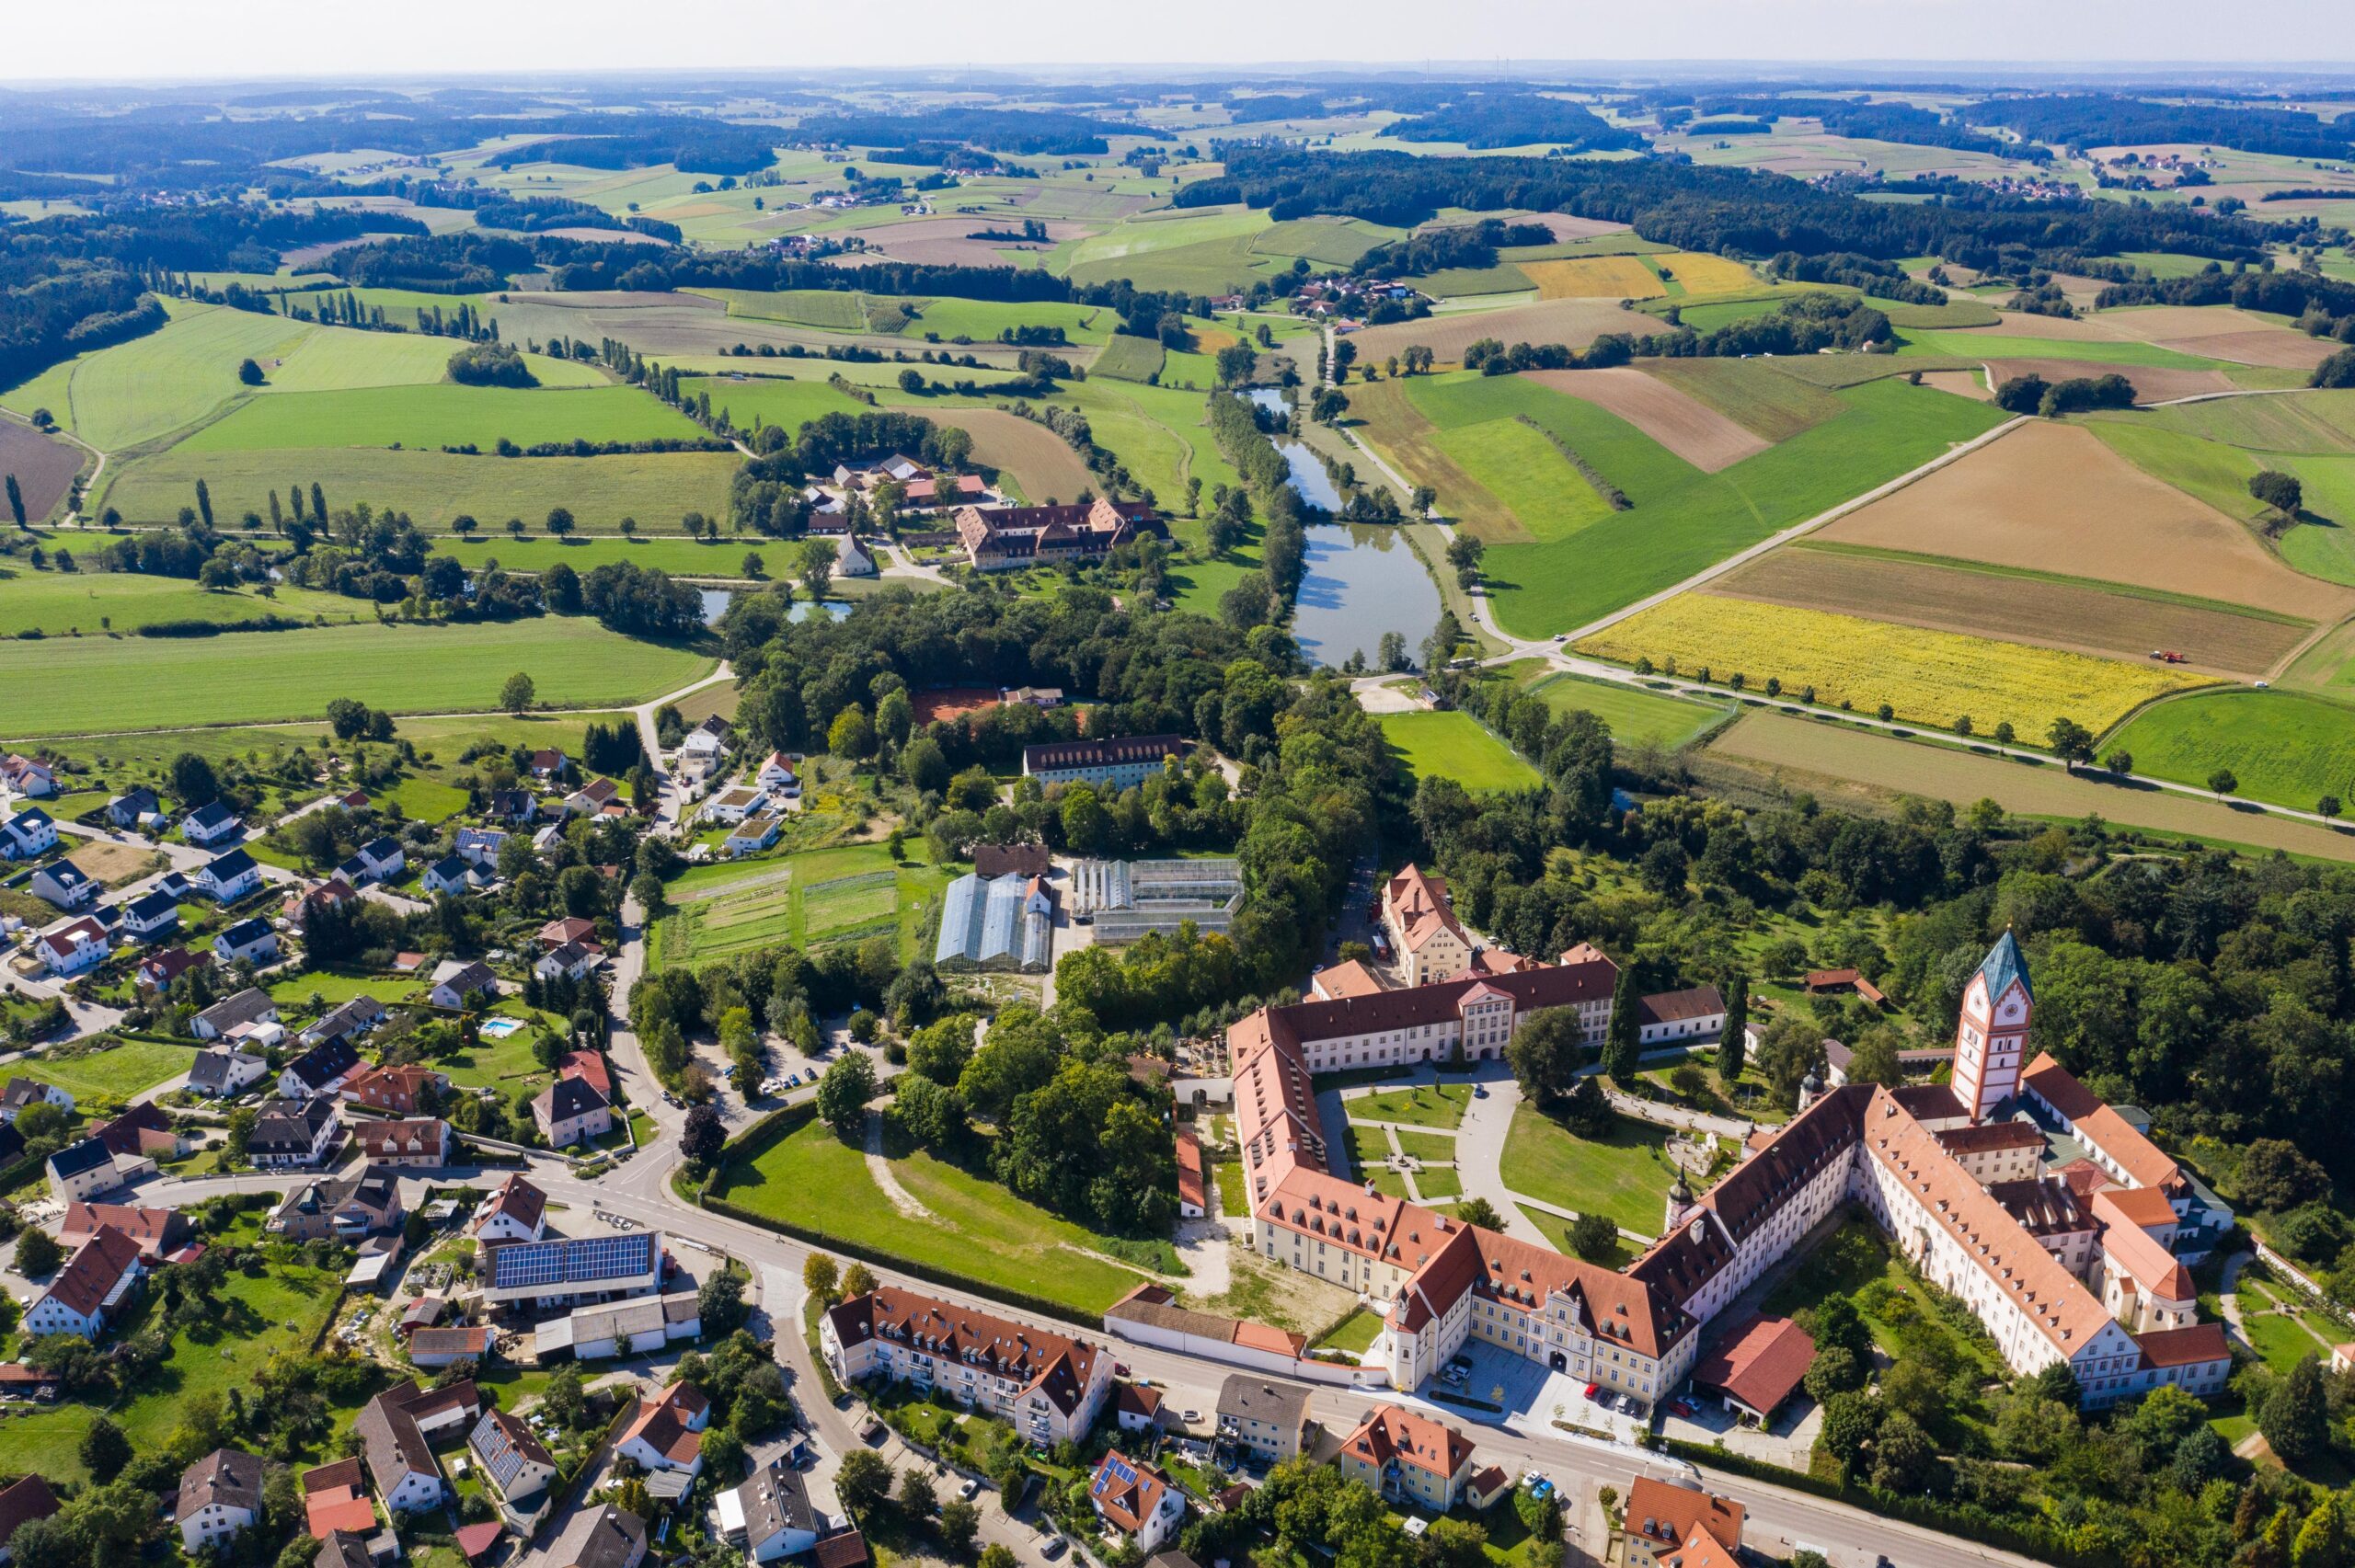 Blick auf das Kloster Scheyern als eines der Ausflugsziele im Landkreis